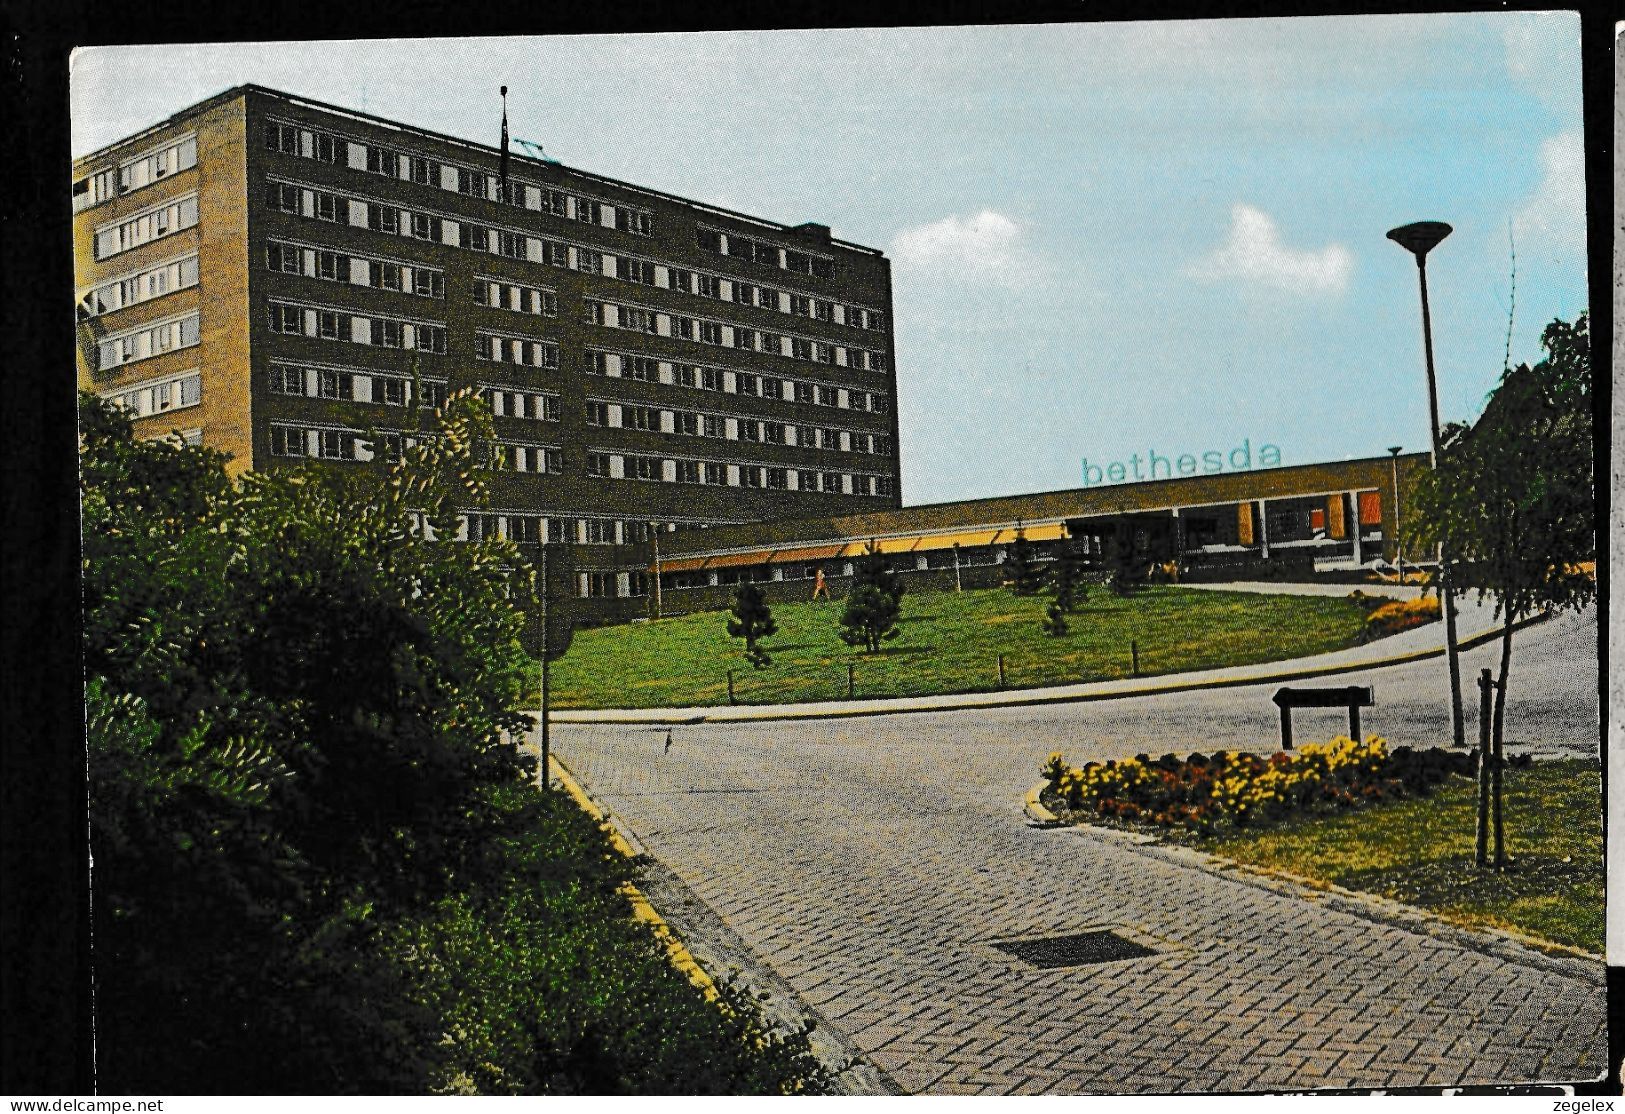 Hoogeveen - Ziekenhuis Bethesda - Hoogeveen